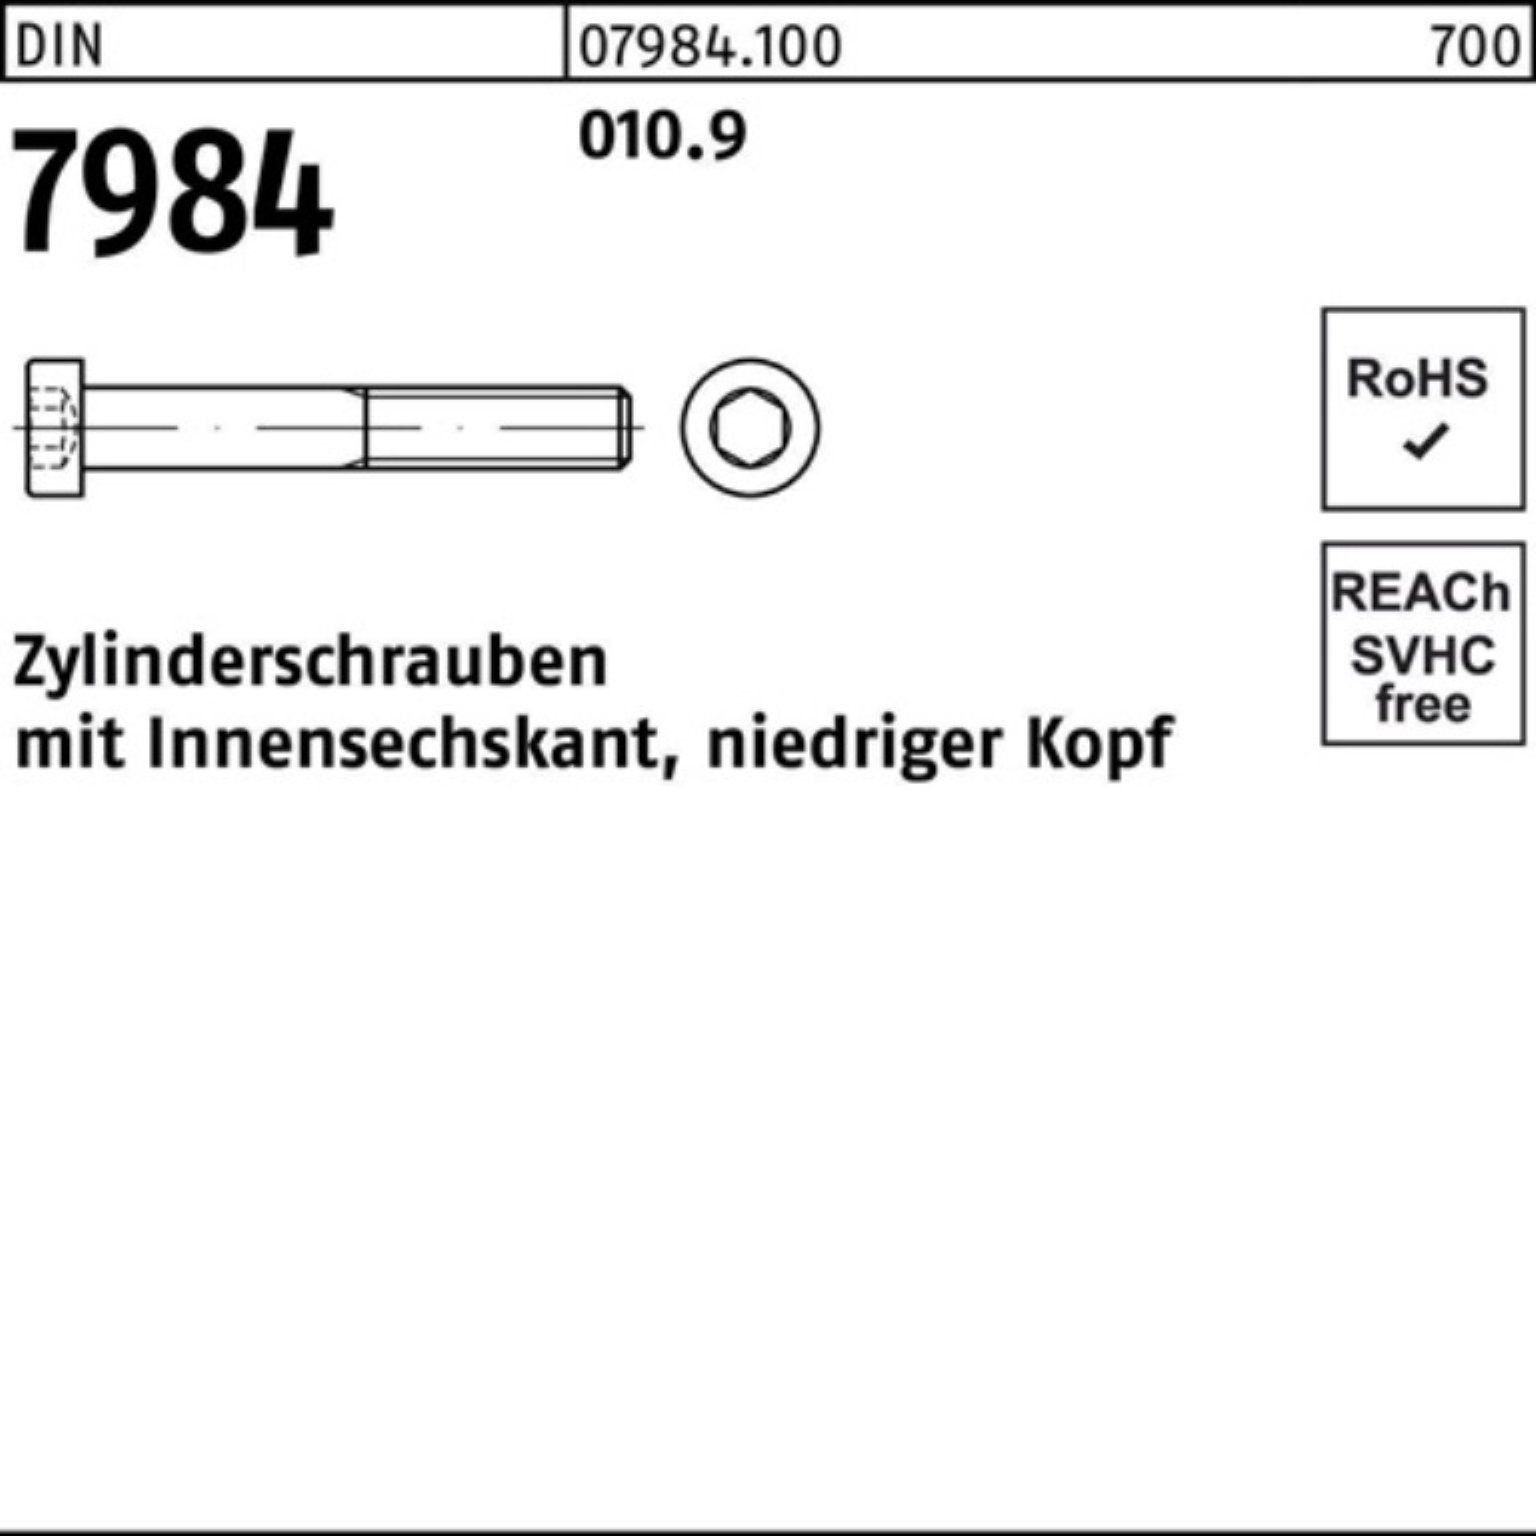 Reyher Zylinderschraube Zylinderschraube 500er M4x 7984 25 010.9 DIN Pack Stück Innen-6kt 500